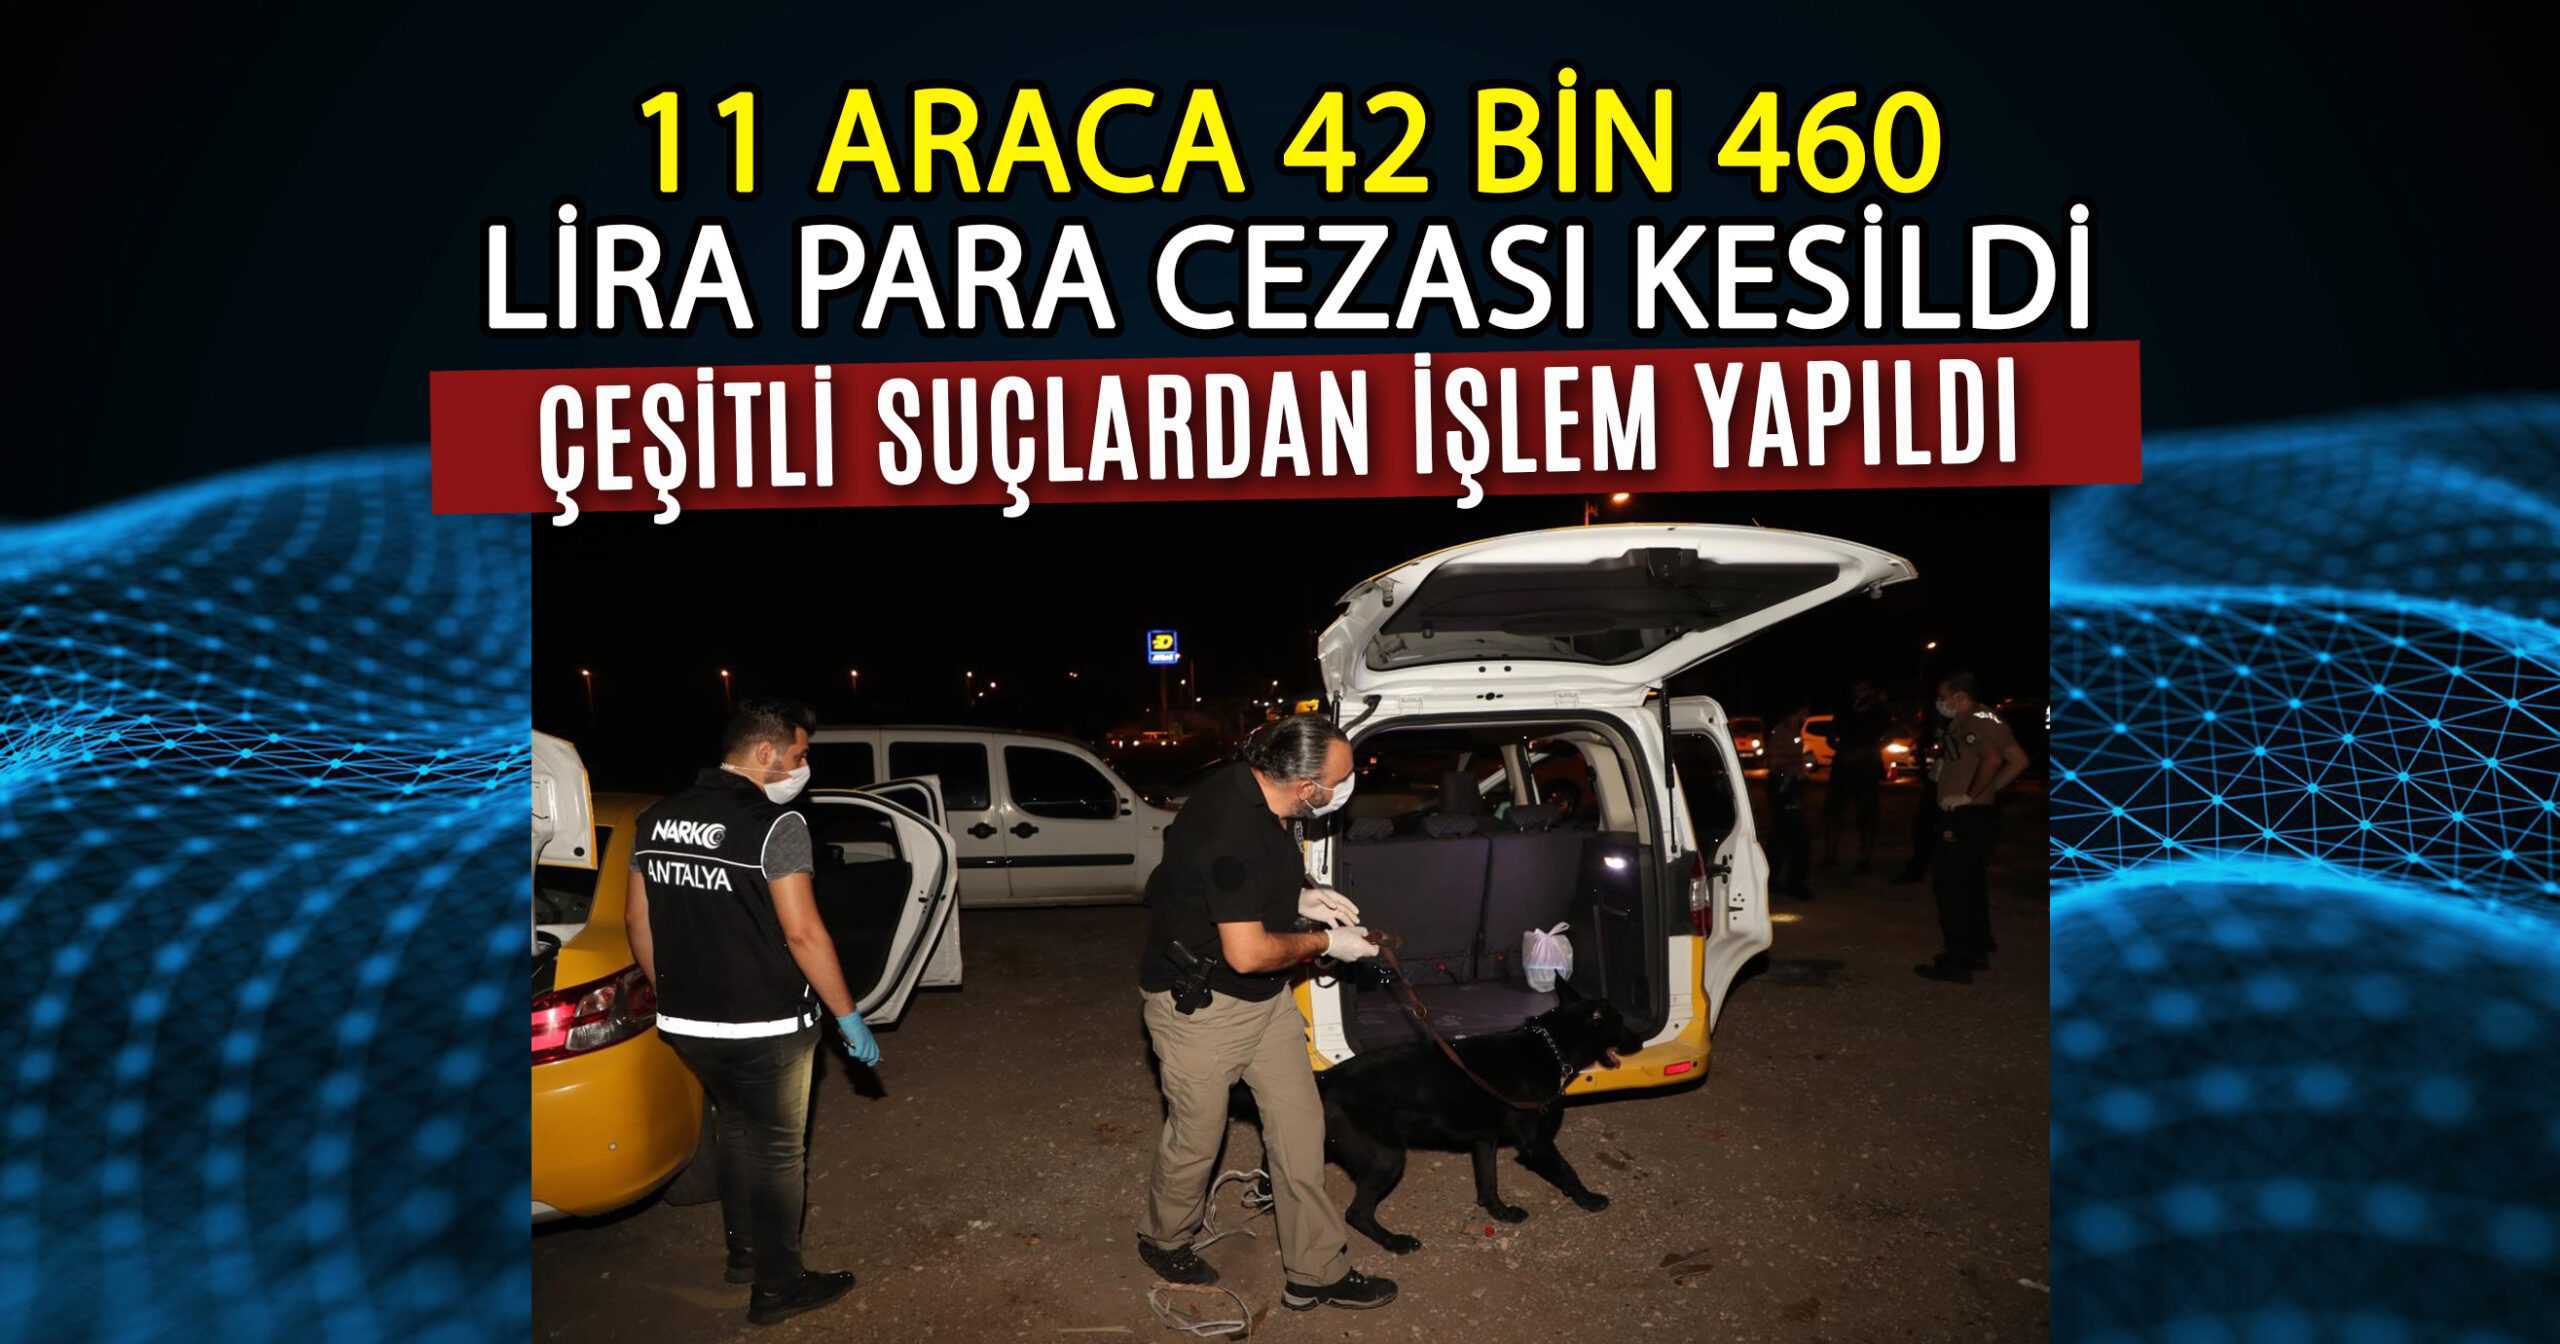 250 POLİSLE ŞOK NARKOTİK UYGULAMASI